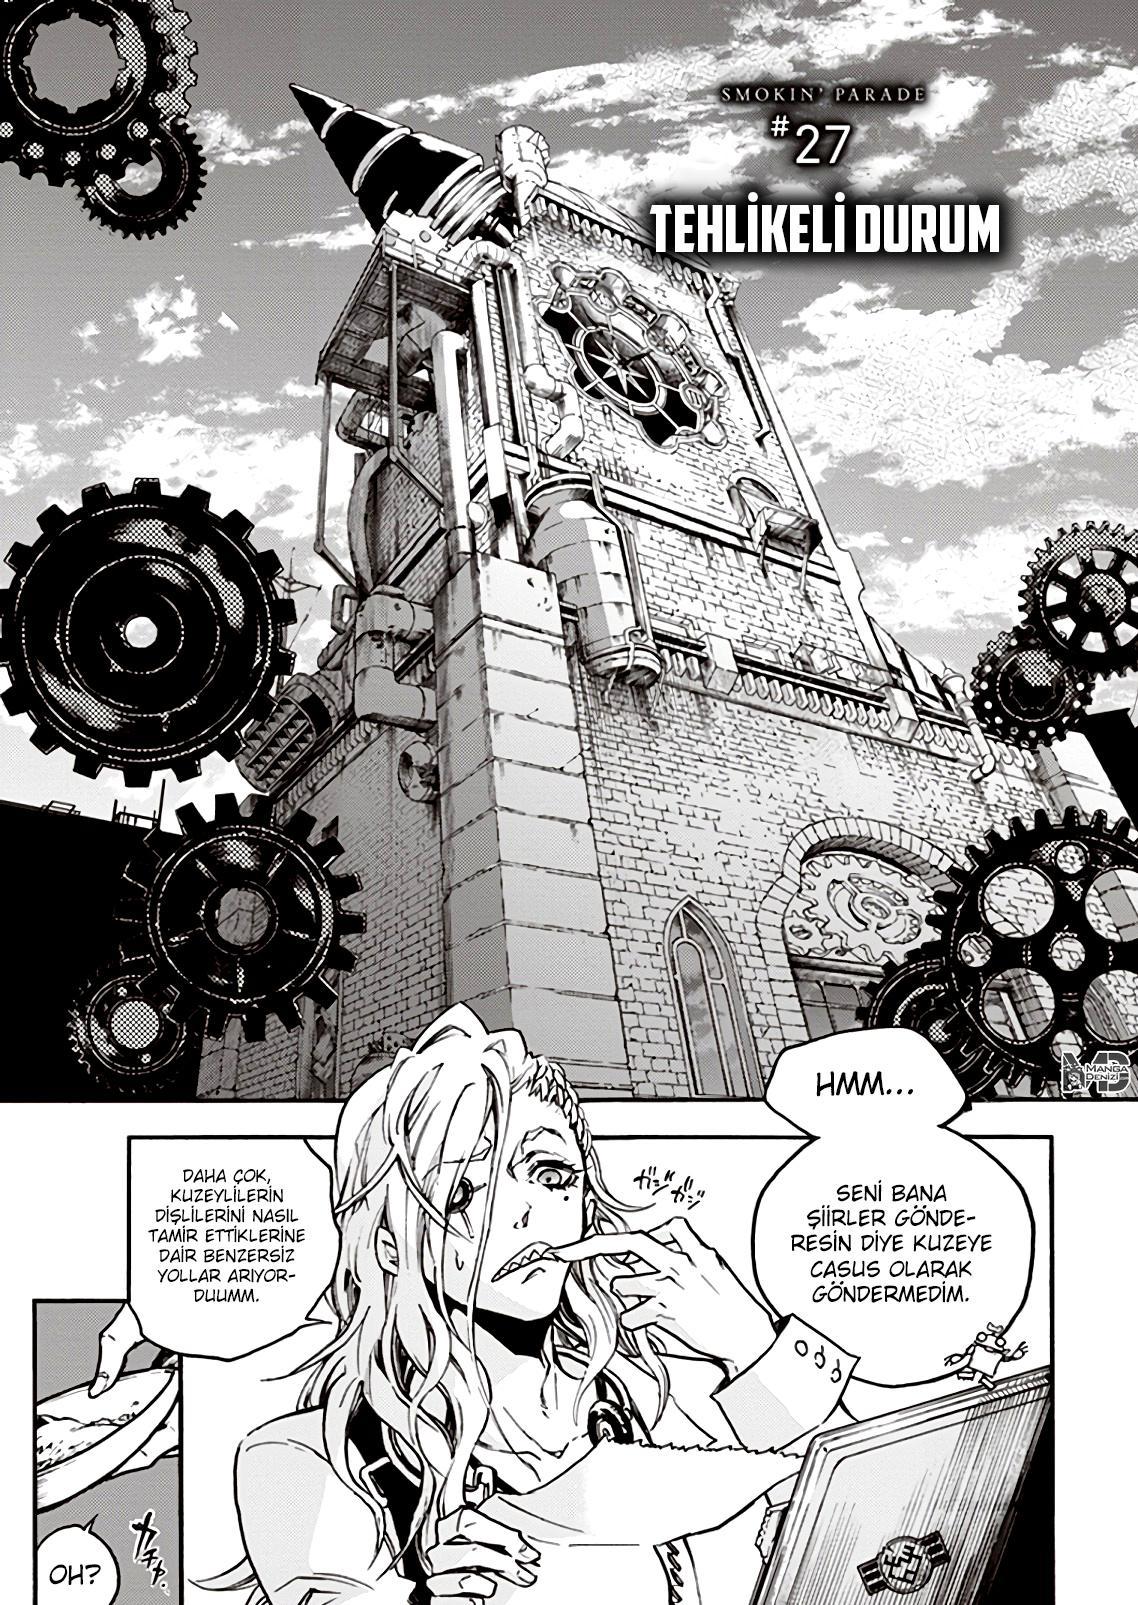 Smokin Parade mangasının 27 bölümünün 2. sayfasını okuyorsunuz.